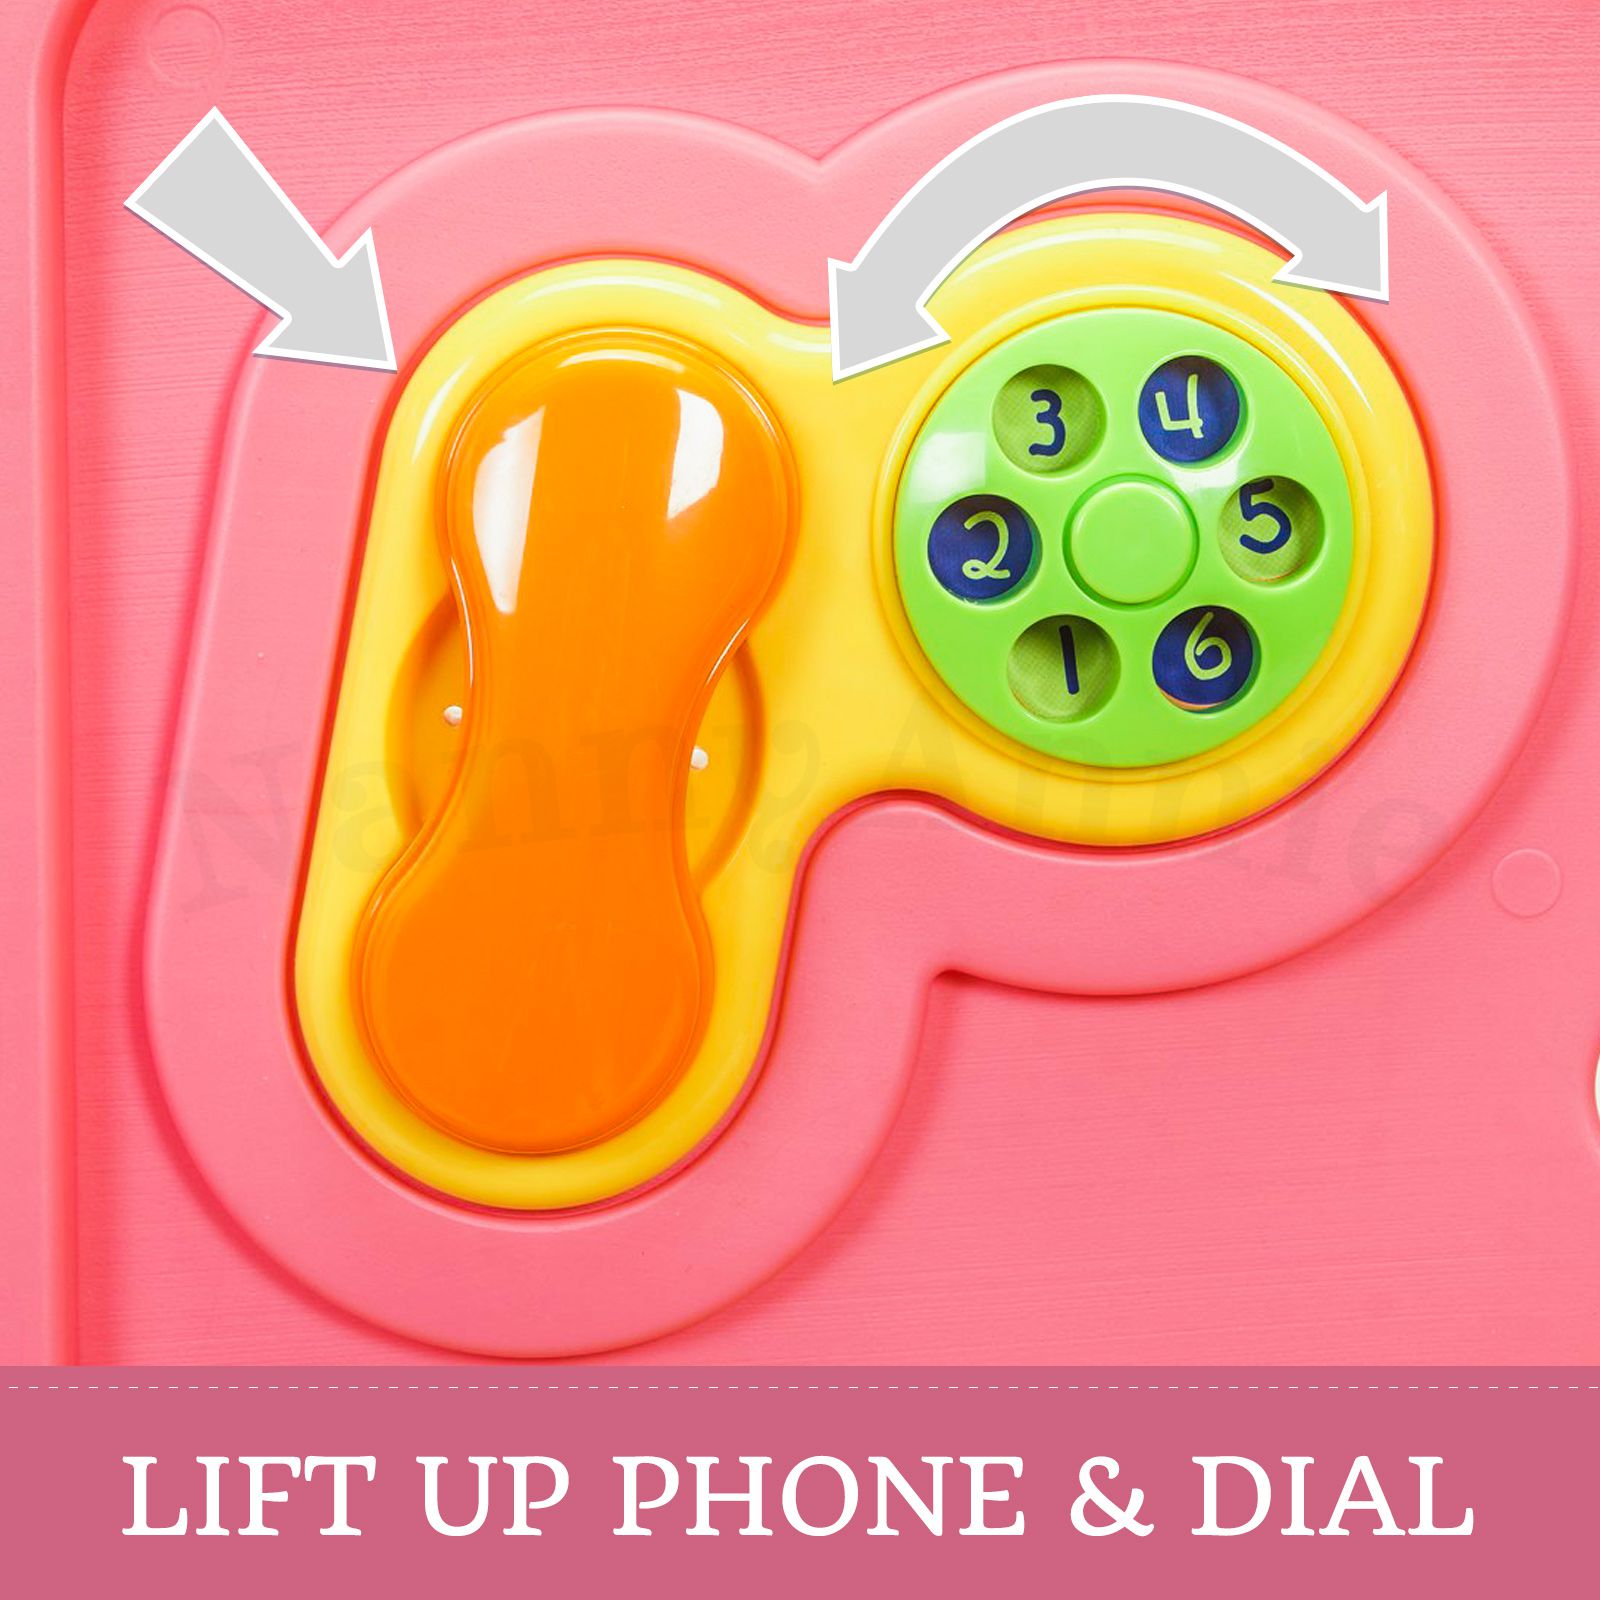 Baby Playpen With Door - Super Giant Interactive Play Room 2.3 x 2.3m - Pink